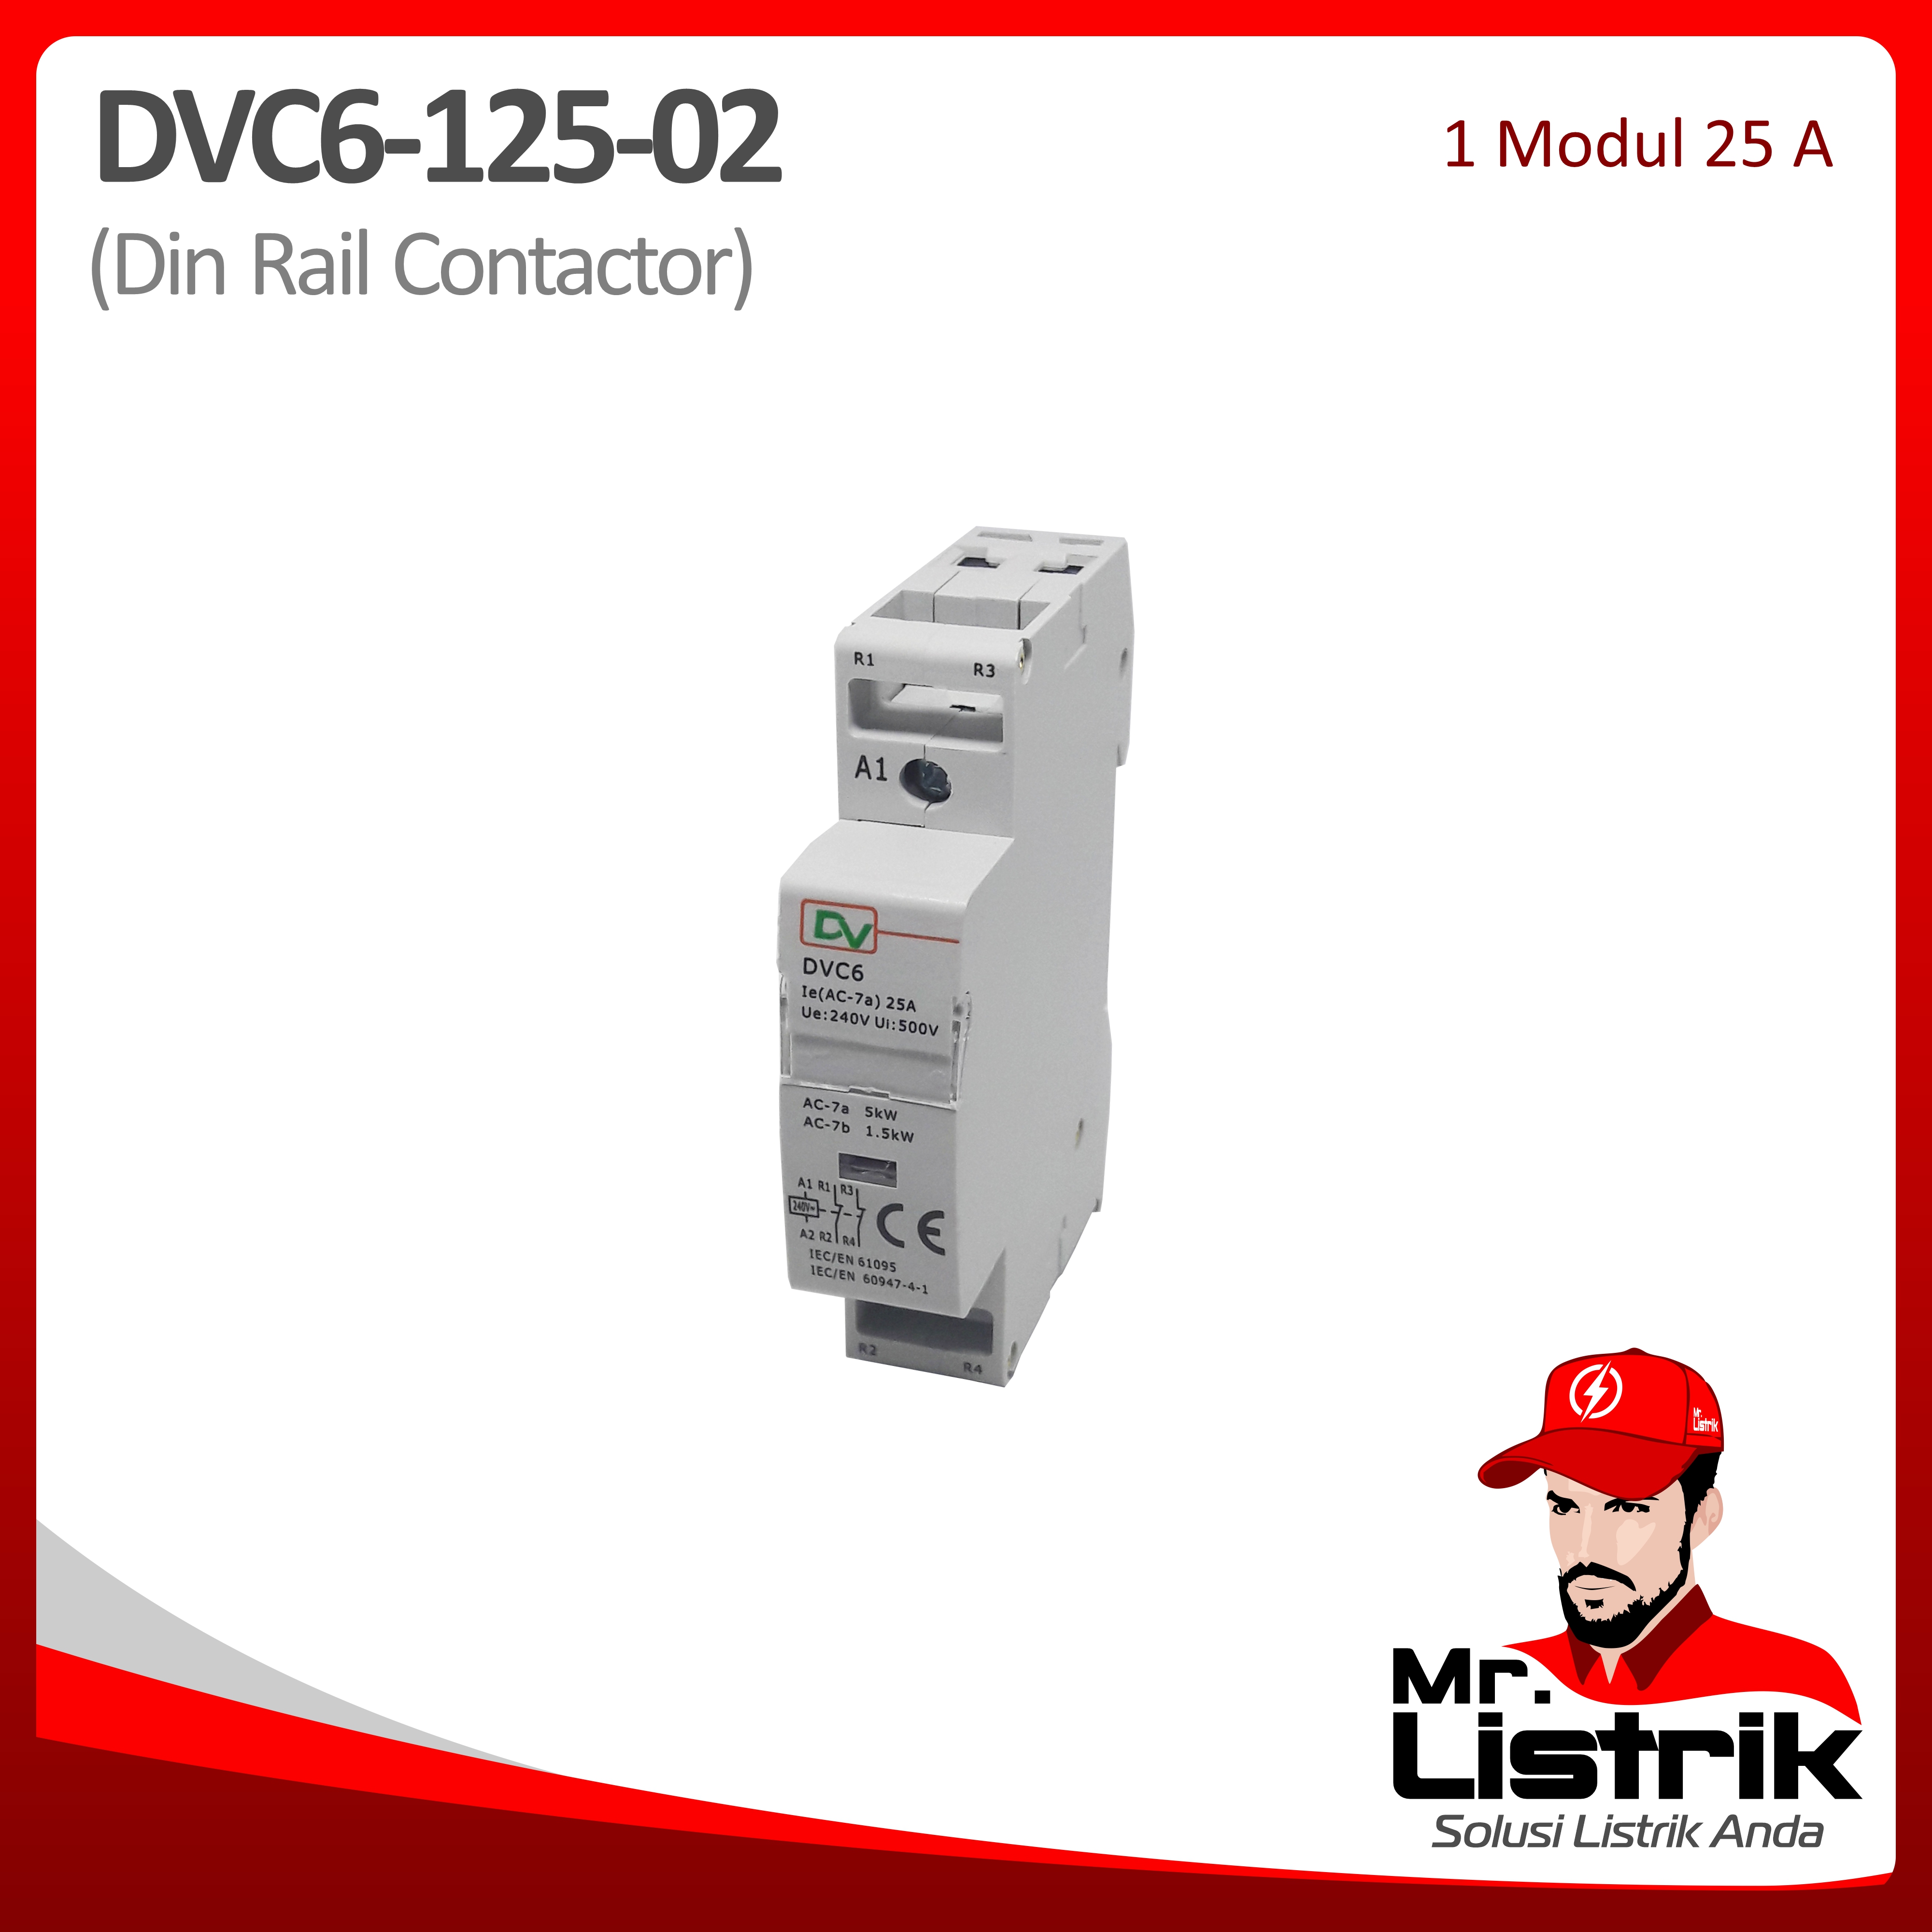 Din Rail Contactor 1 Modul 25A 2NC DVC6-125-02